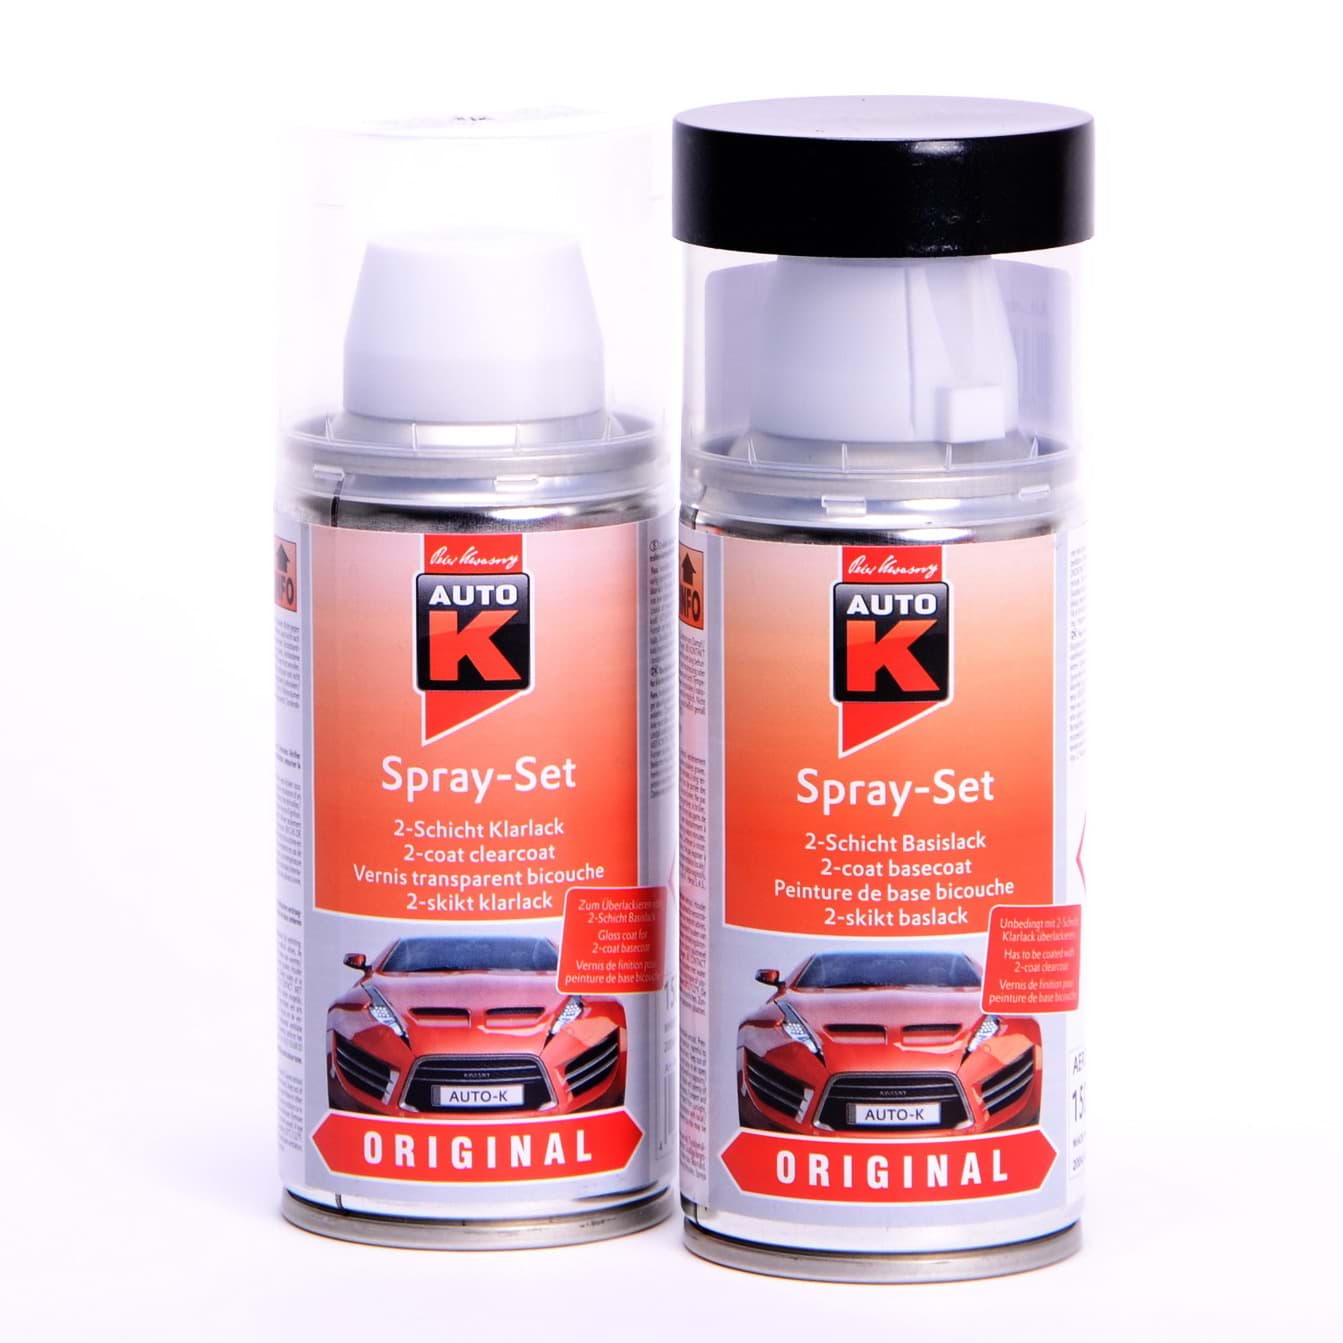 Afbeelding van Auto-K Spray-Set Autolack für Opel 40M Champagner Silber met 21475